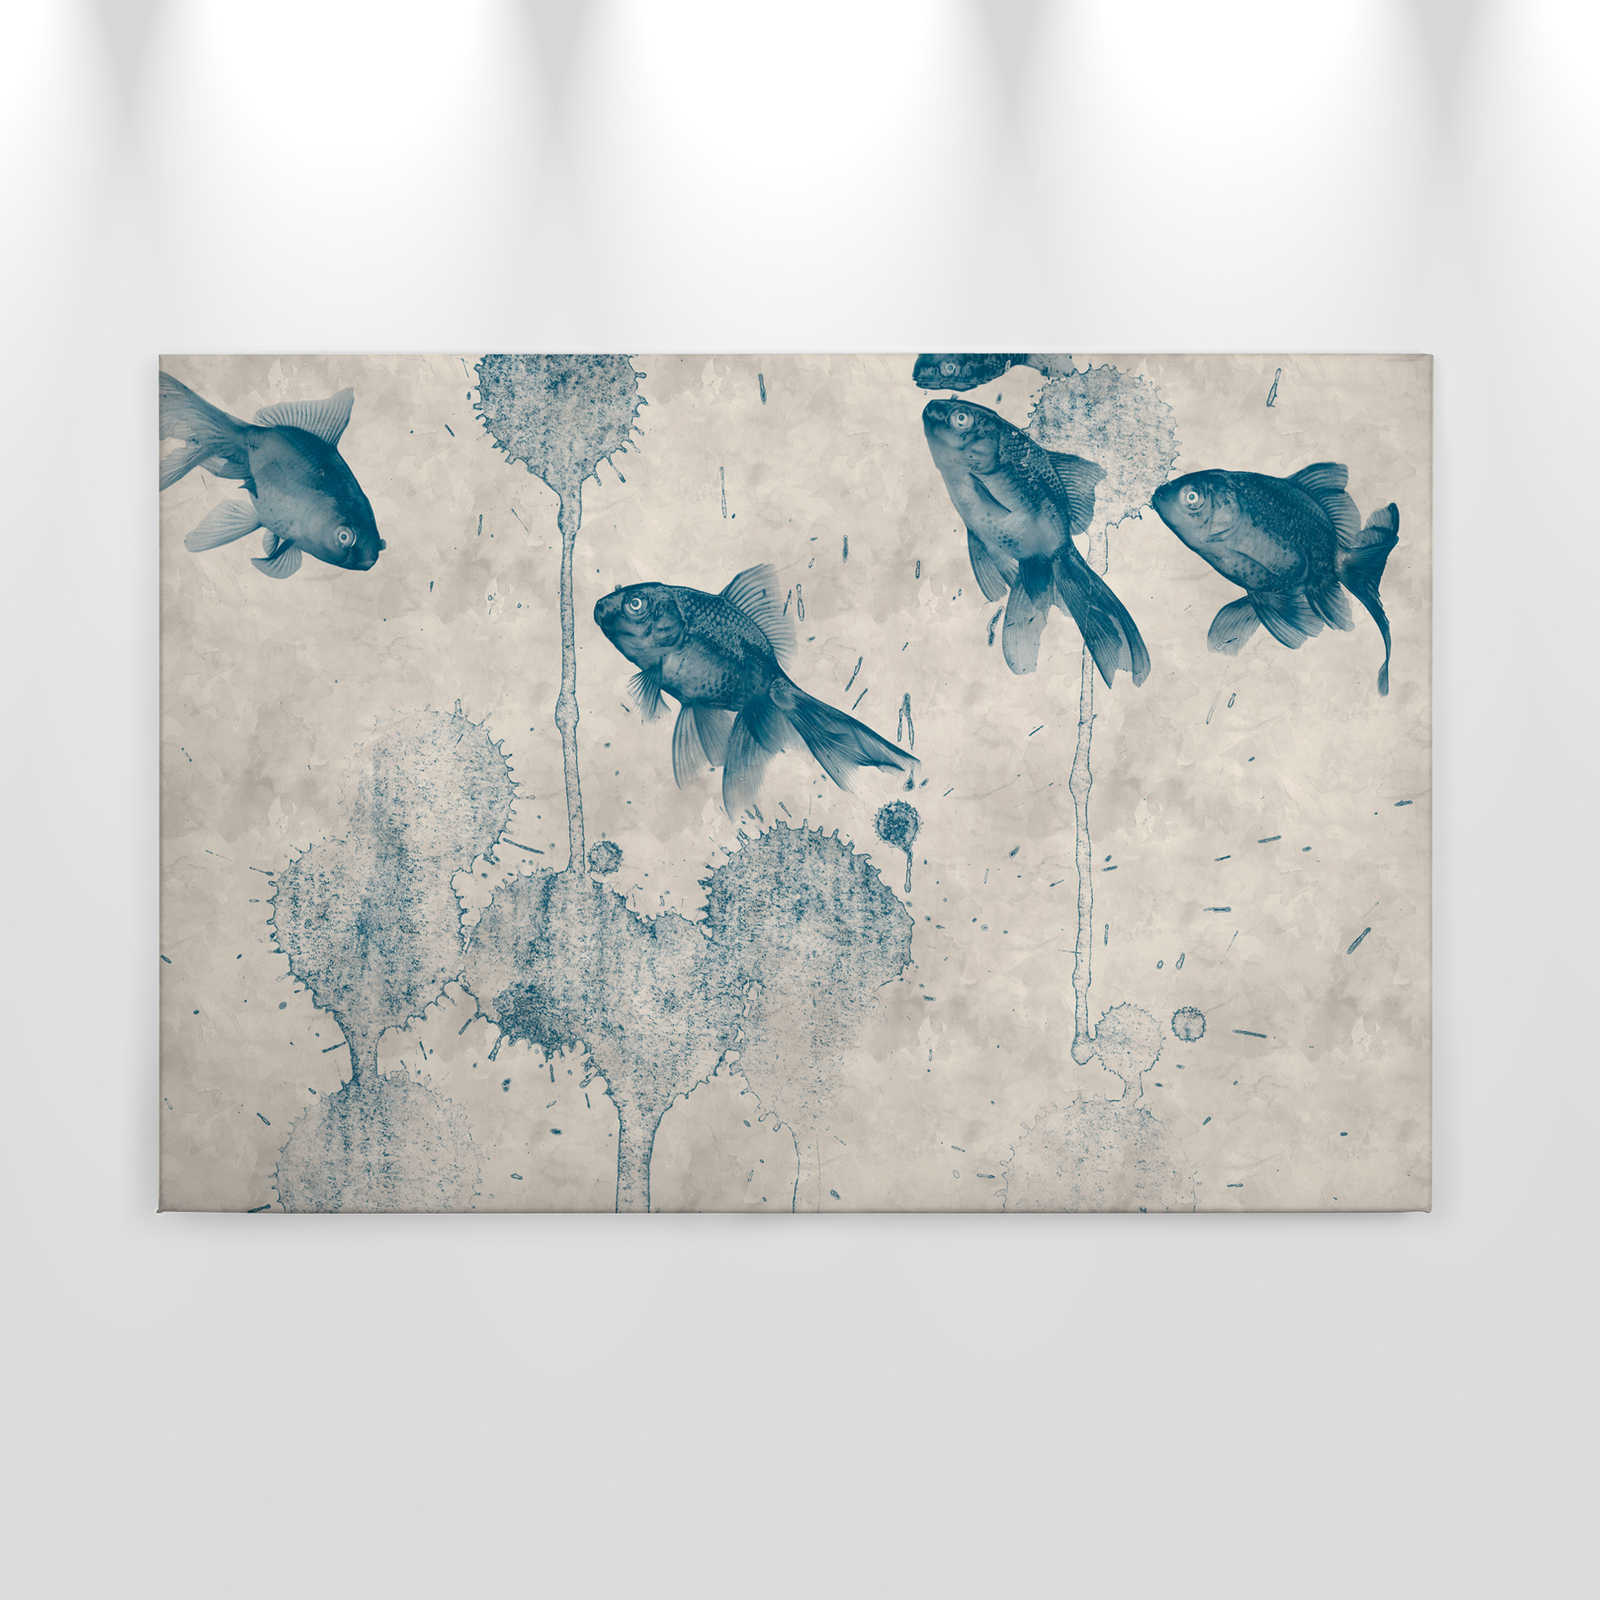             moderness Cuadro en lienzo Estanque de peces de colores - 0,90 m x 0,60 m
        